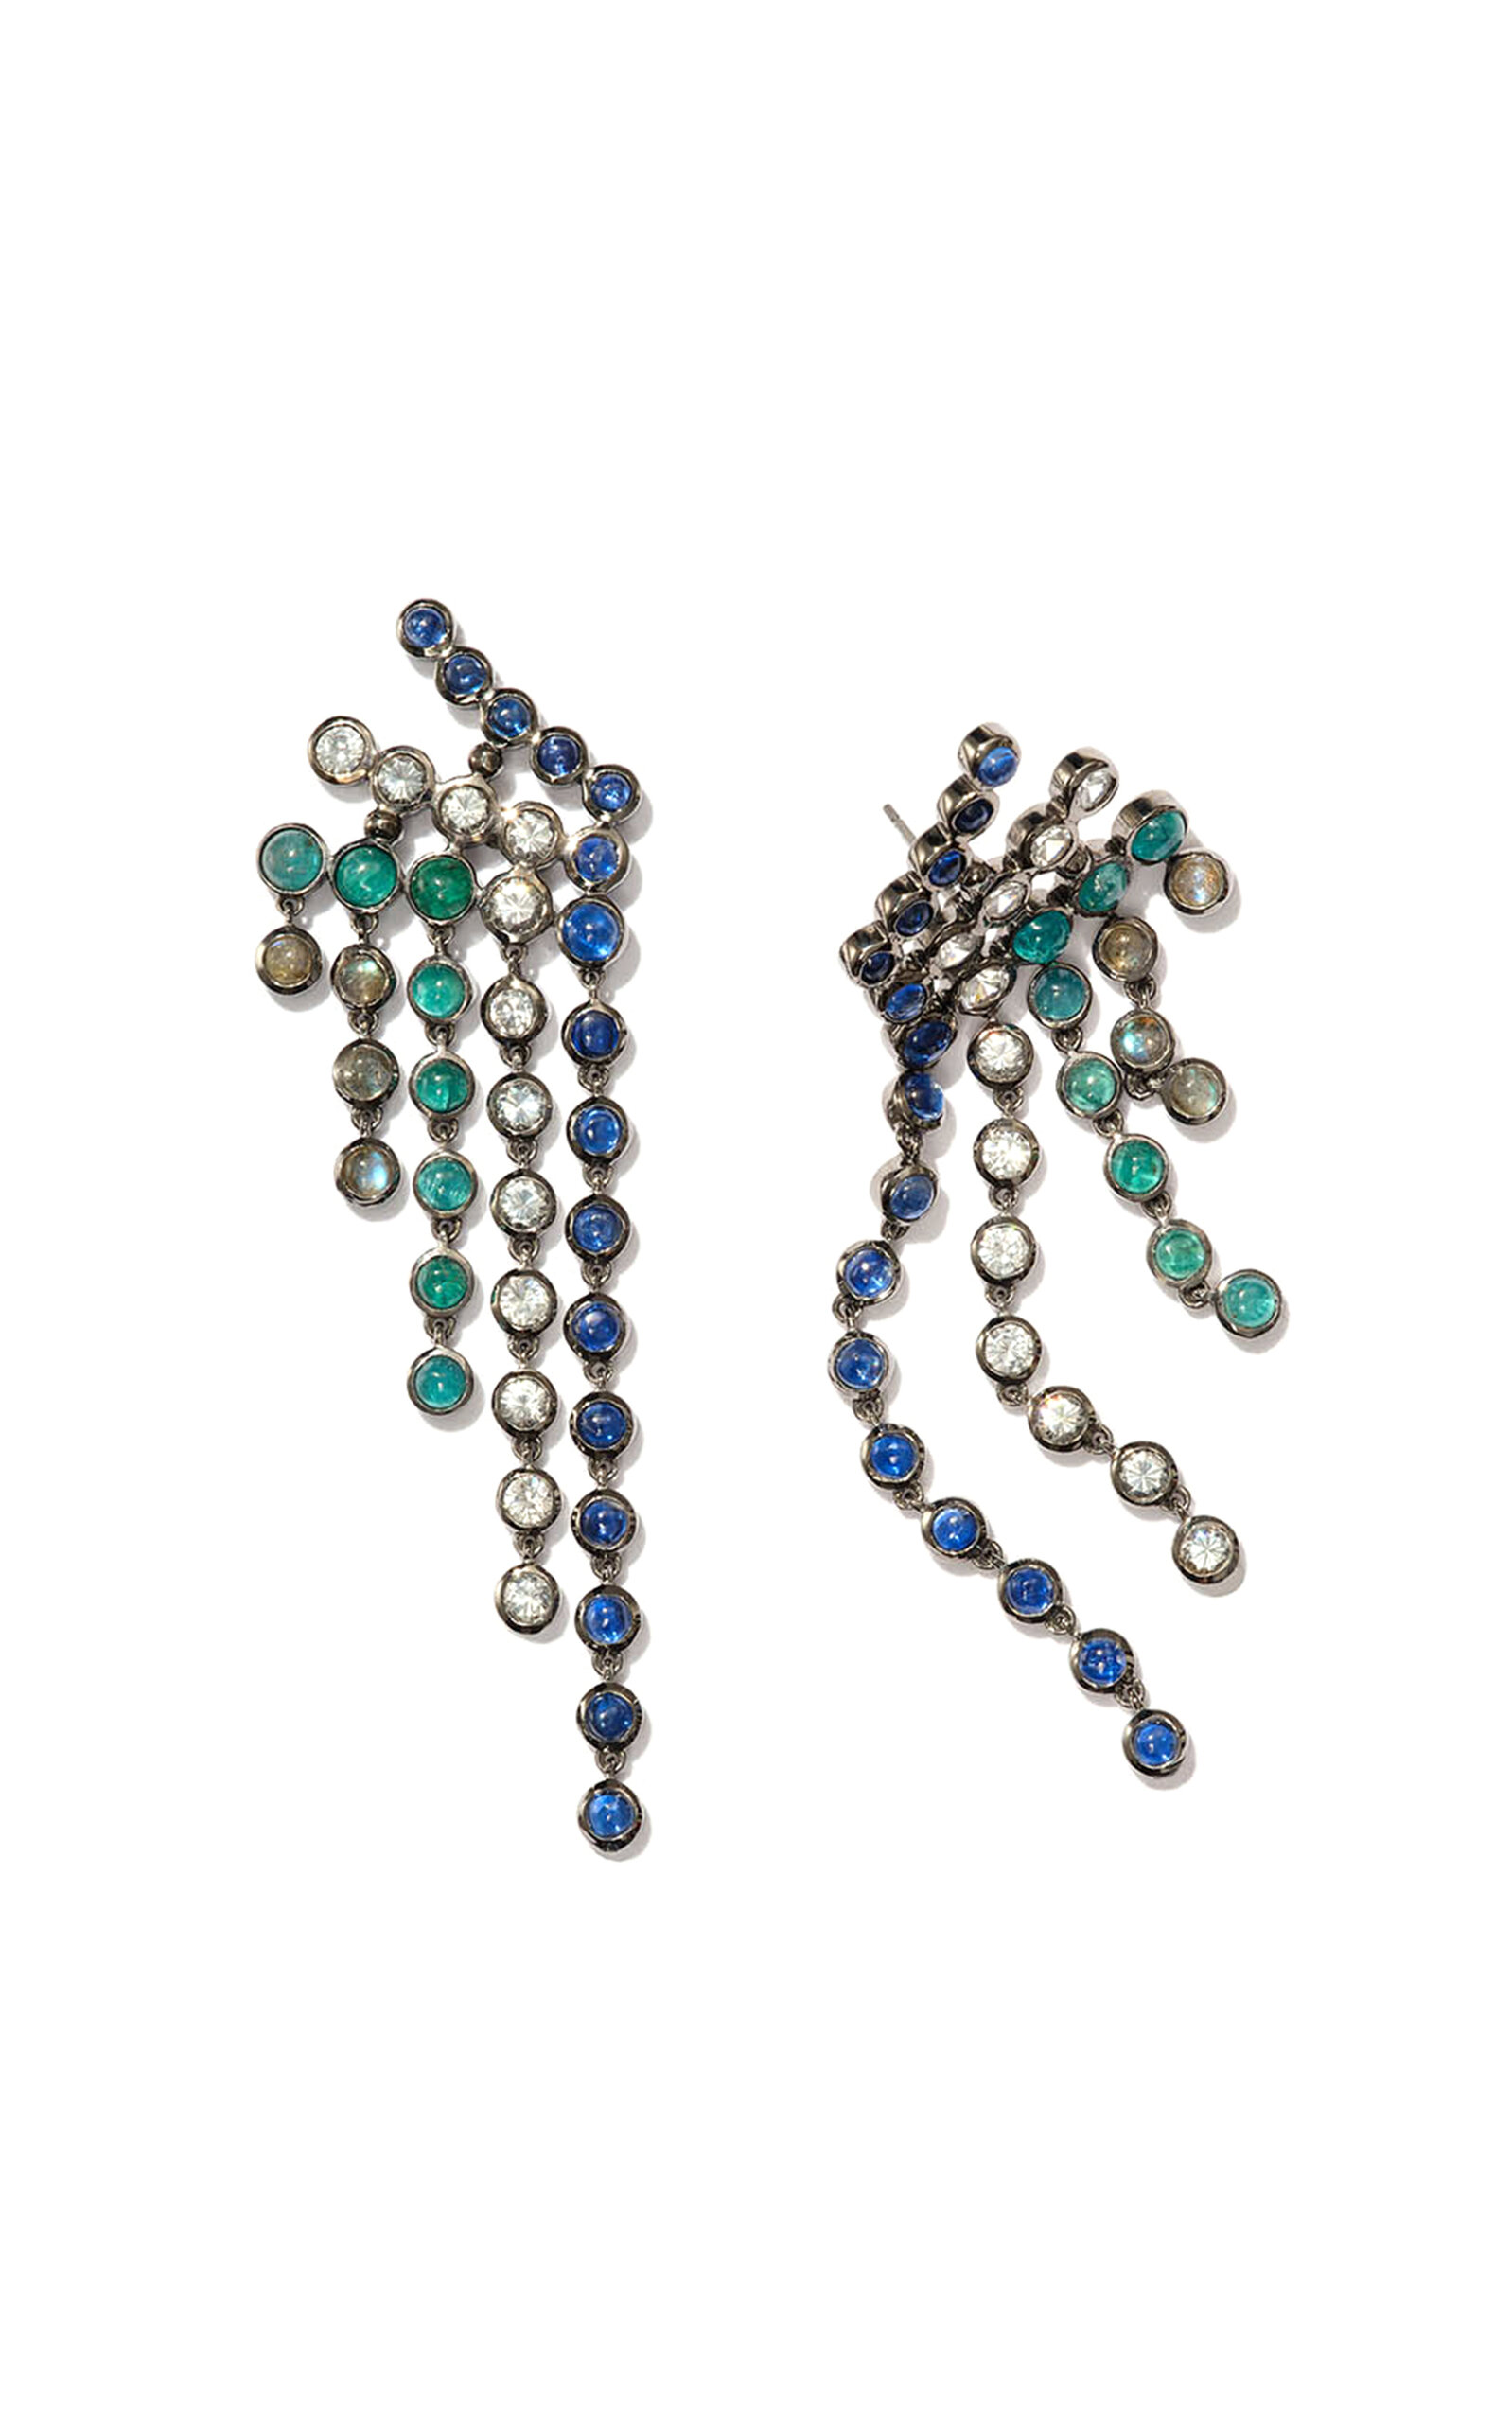 Pixelated Fringes Earrings in  Blue Kyanite